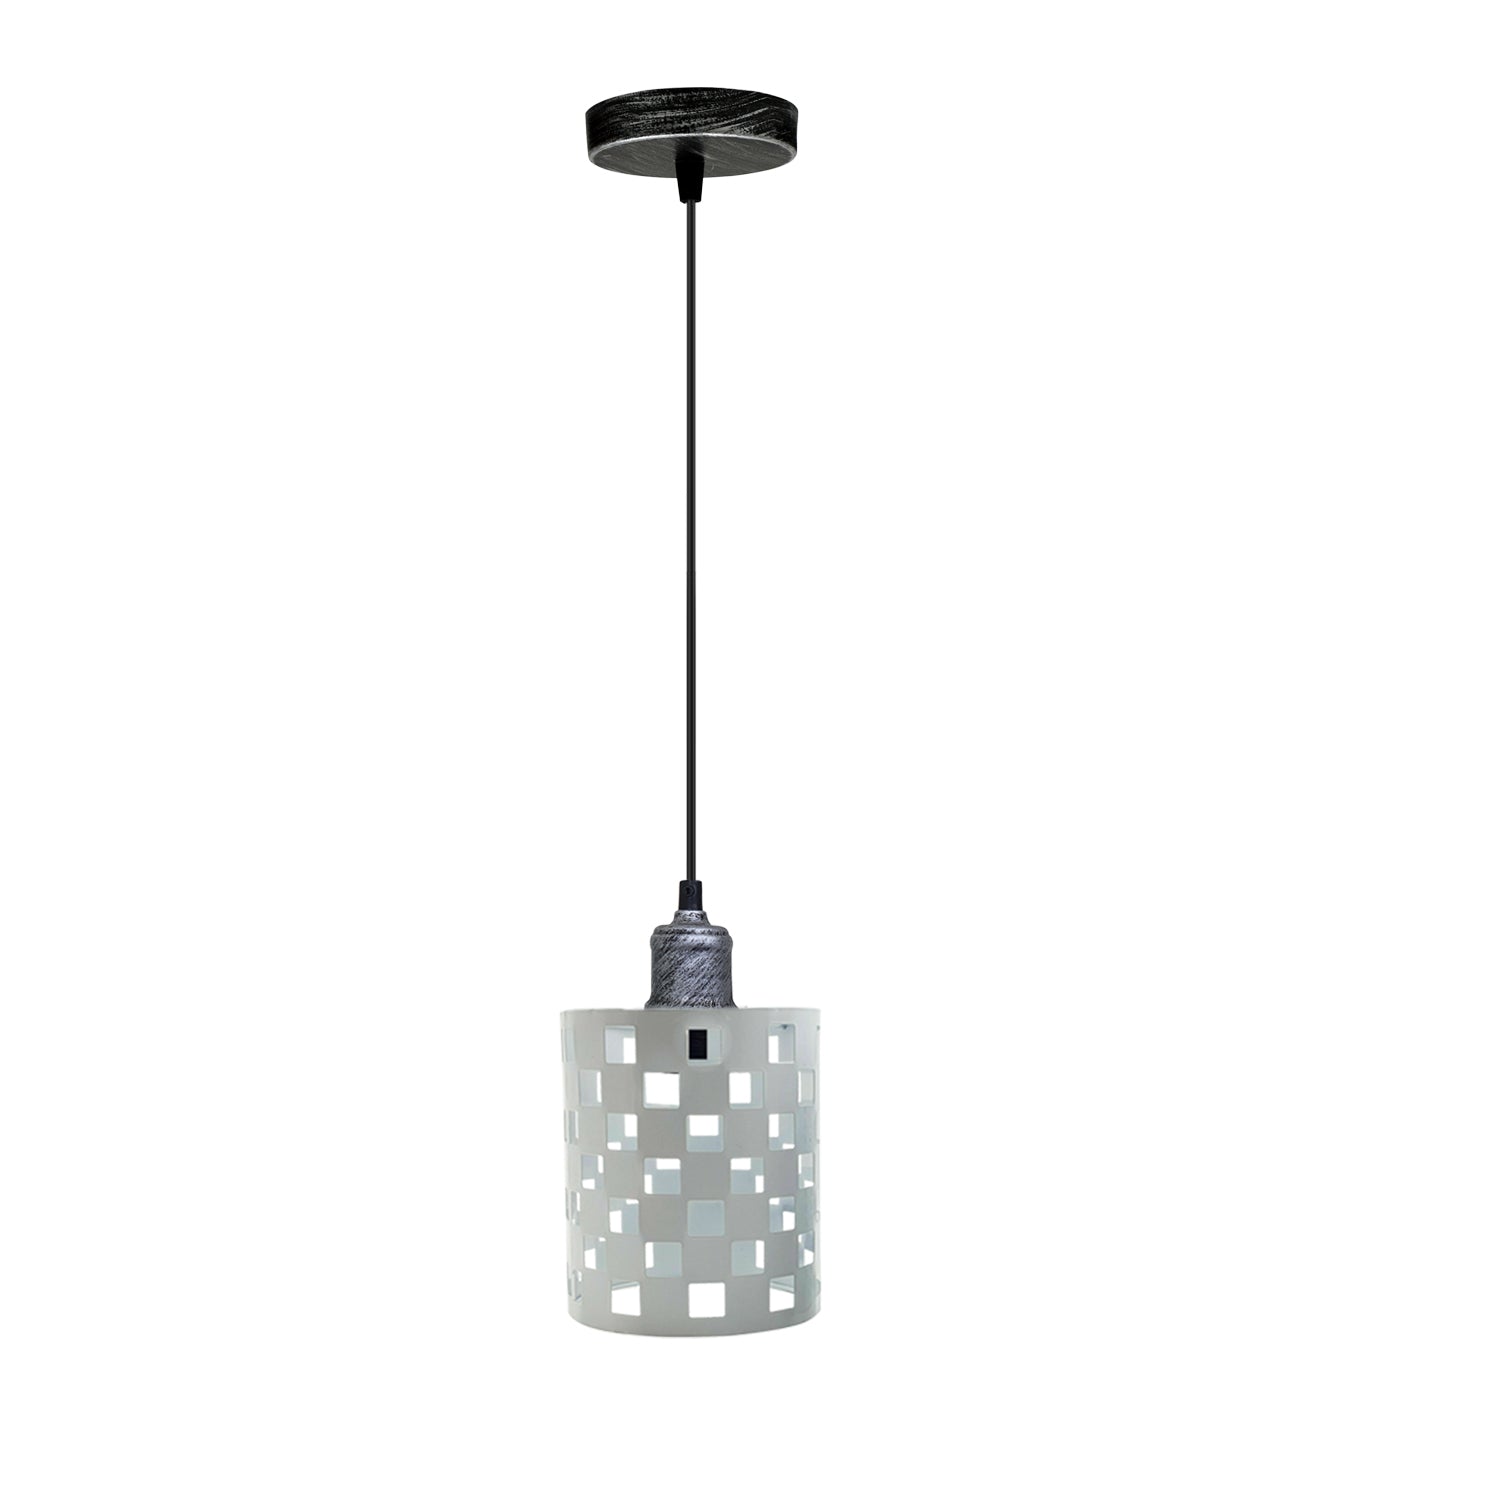 Modern vintage Pendant Hanging Ceiling Lamp Shade Industrial Retro Vintage Light~3431 - LEDSone UK Ltd